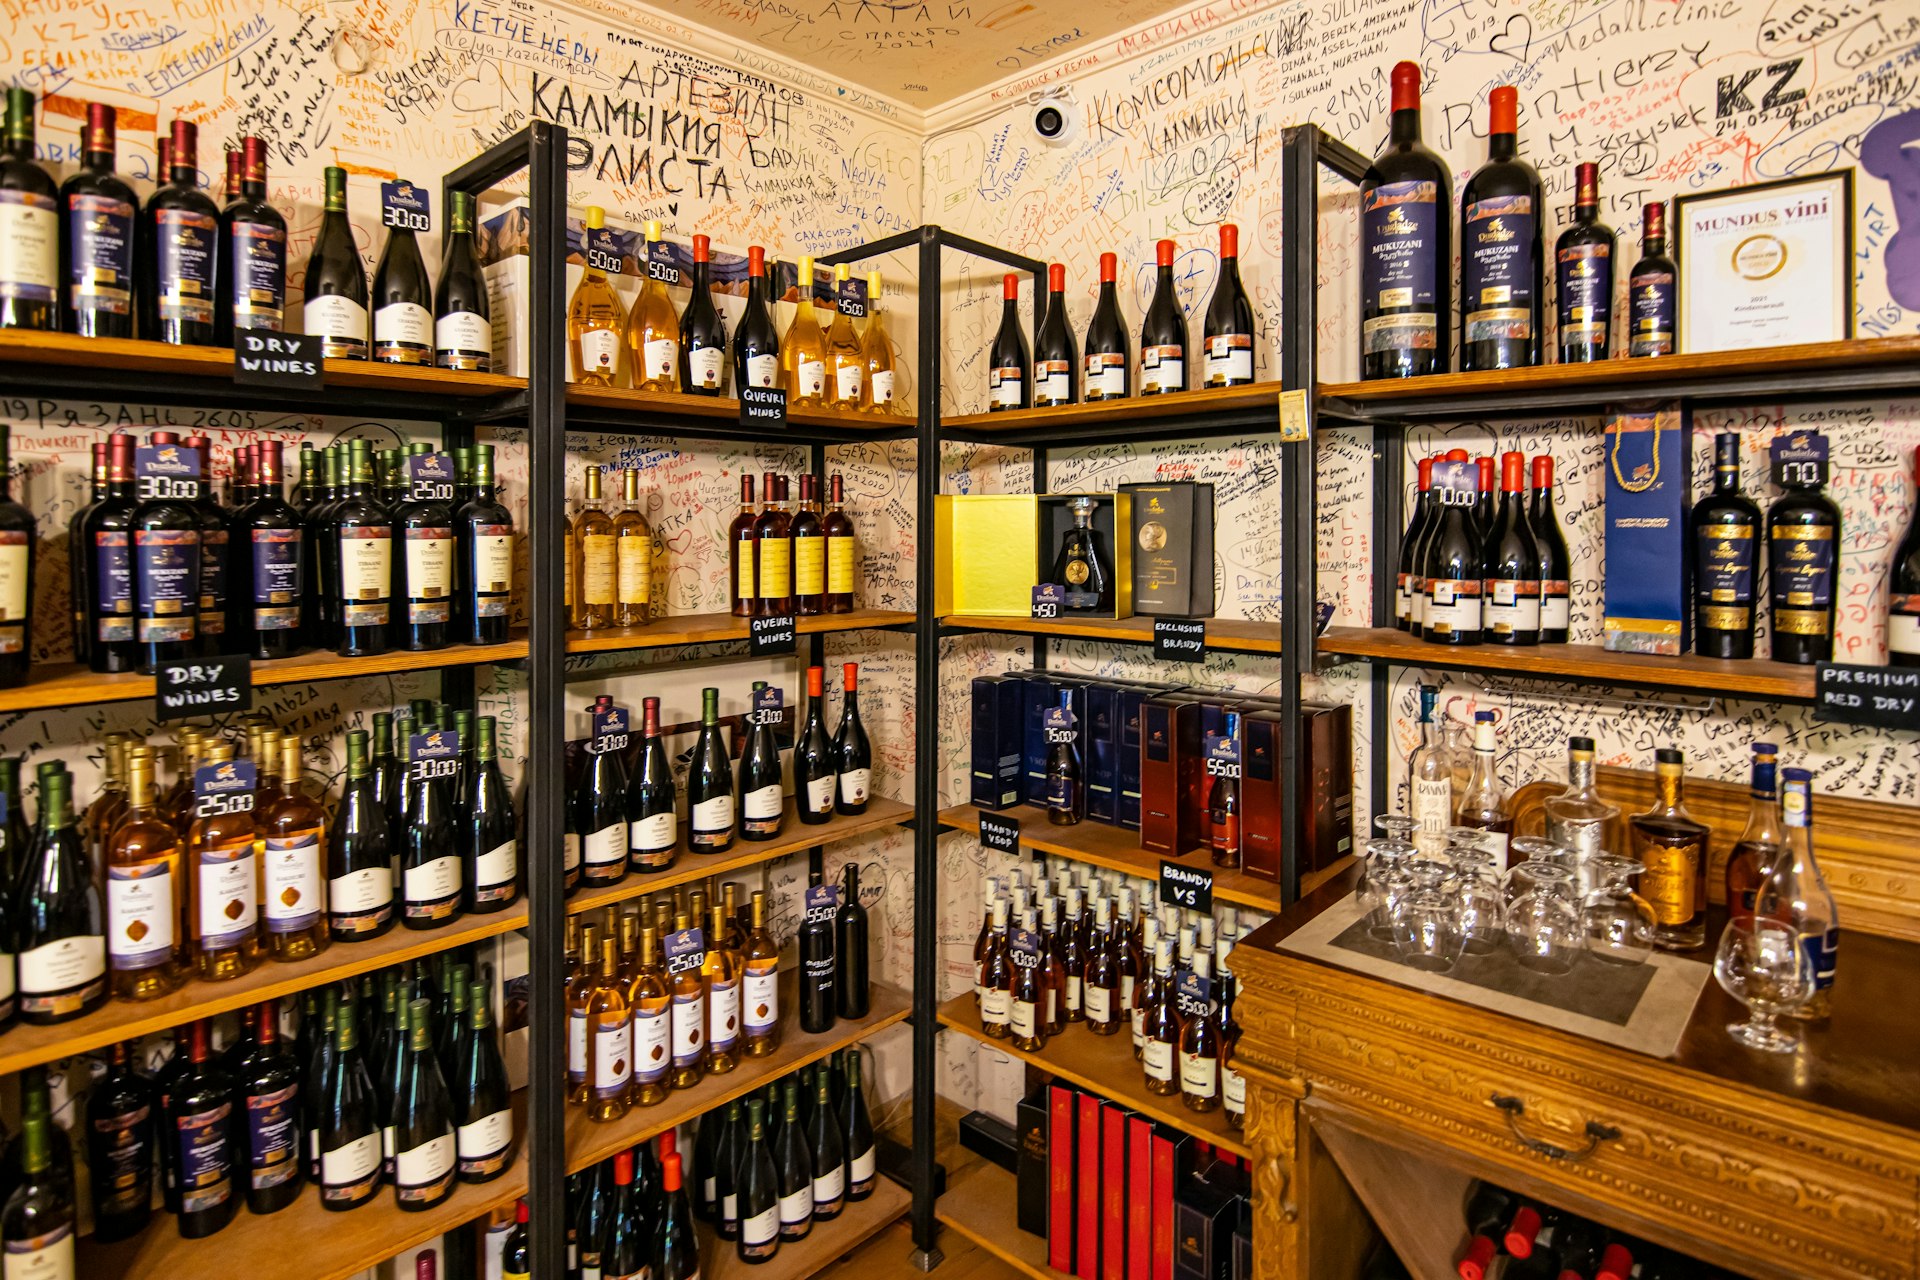 Uma loja de vinhos tem prateleiras repletas de diferentes variedades de vinho georgiano;  as paredes atrás das prateleiras são cobertas por letras em estilo graffiti.